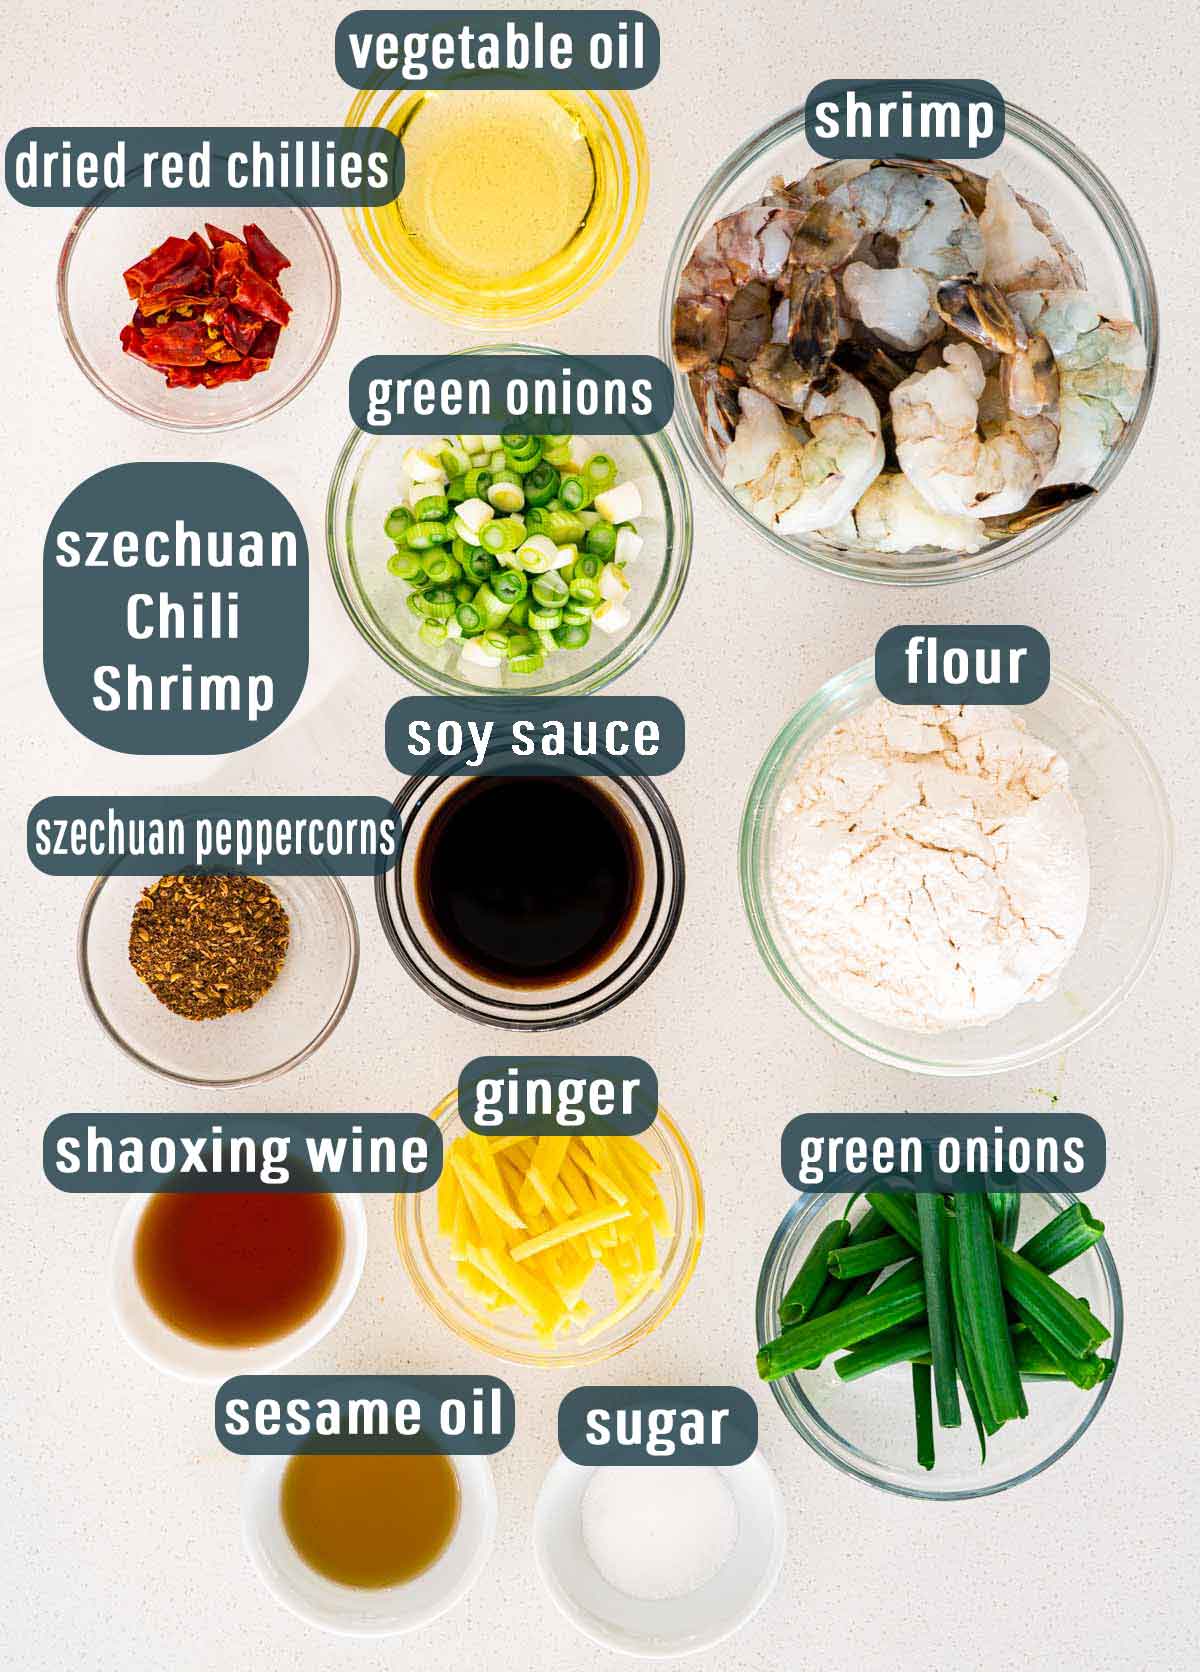 Szechuan Chili Shrimp Jo Cooks